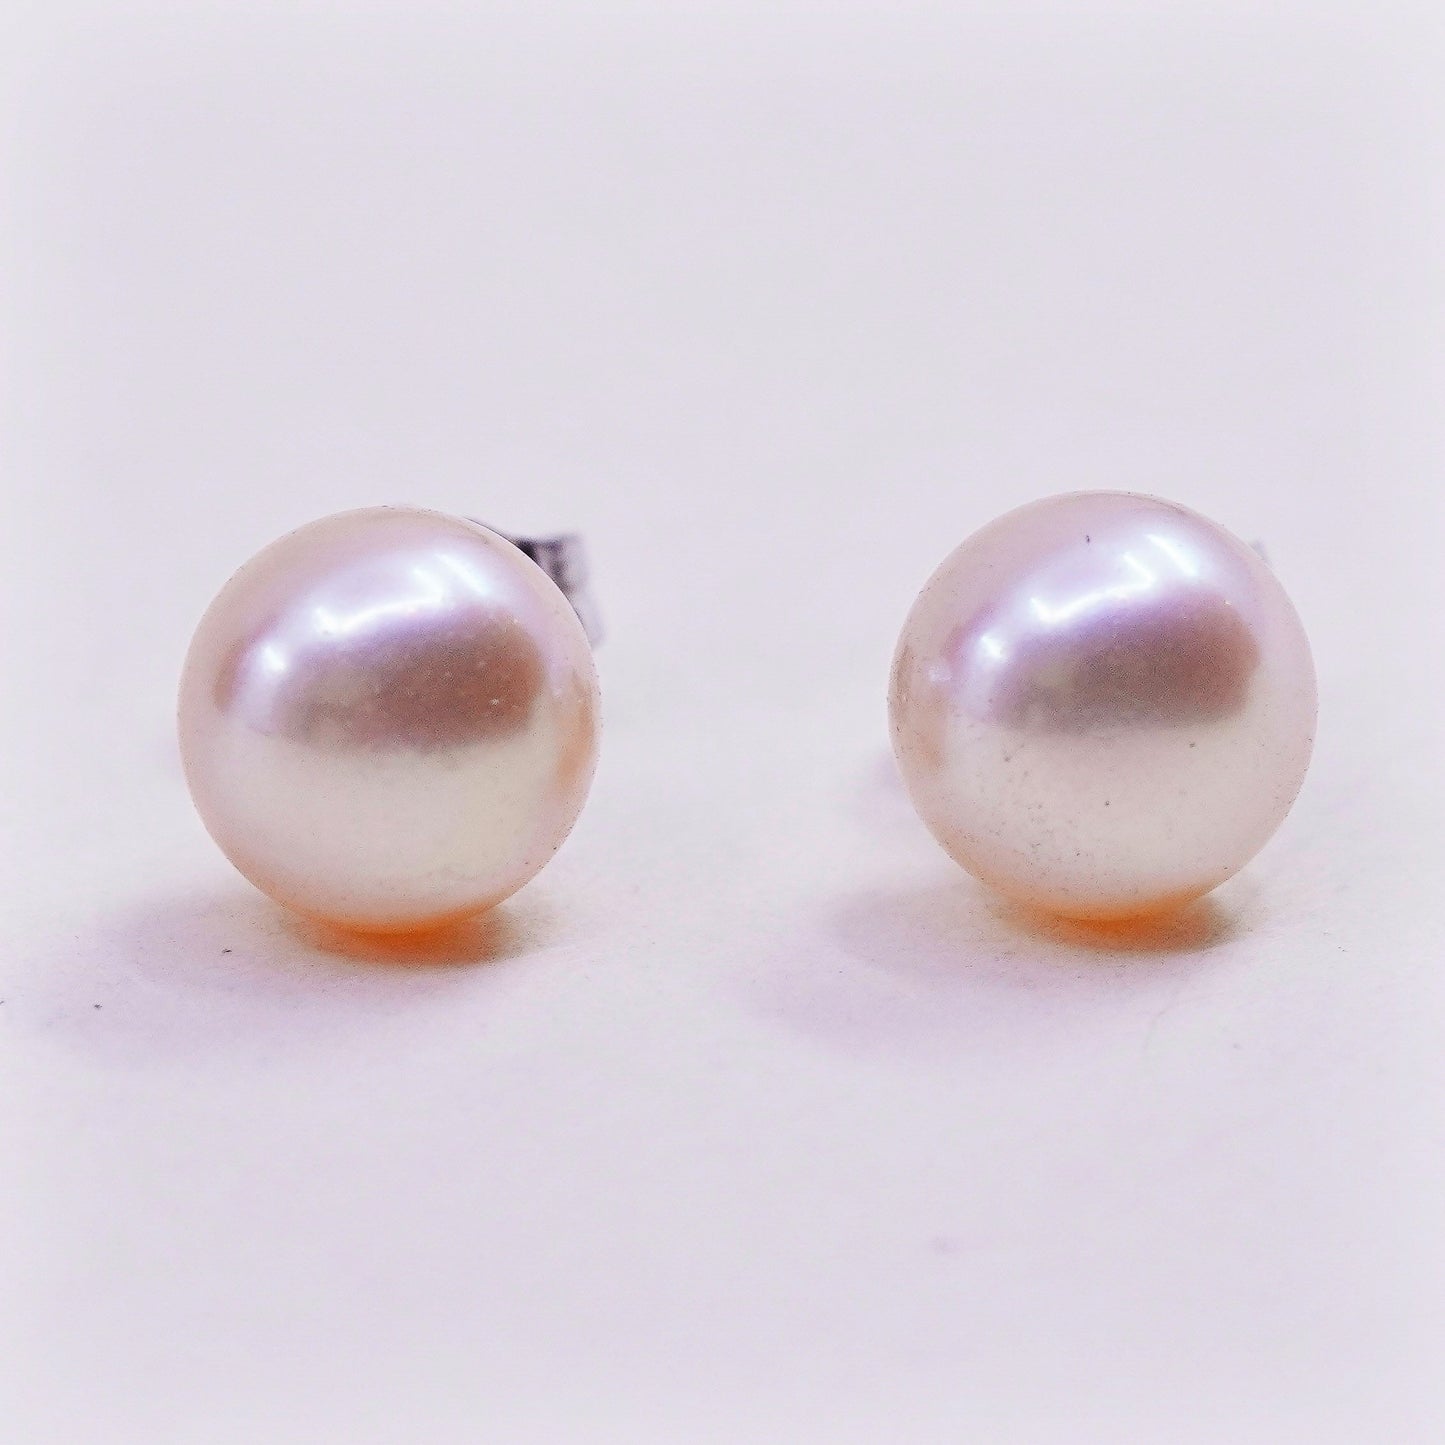 Vintage sterling silver earrings, 925 studs with orange pearl